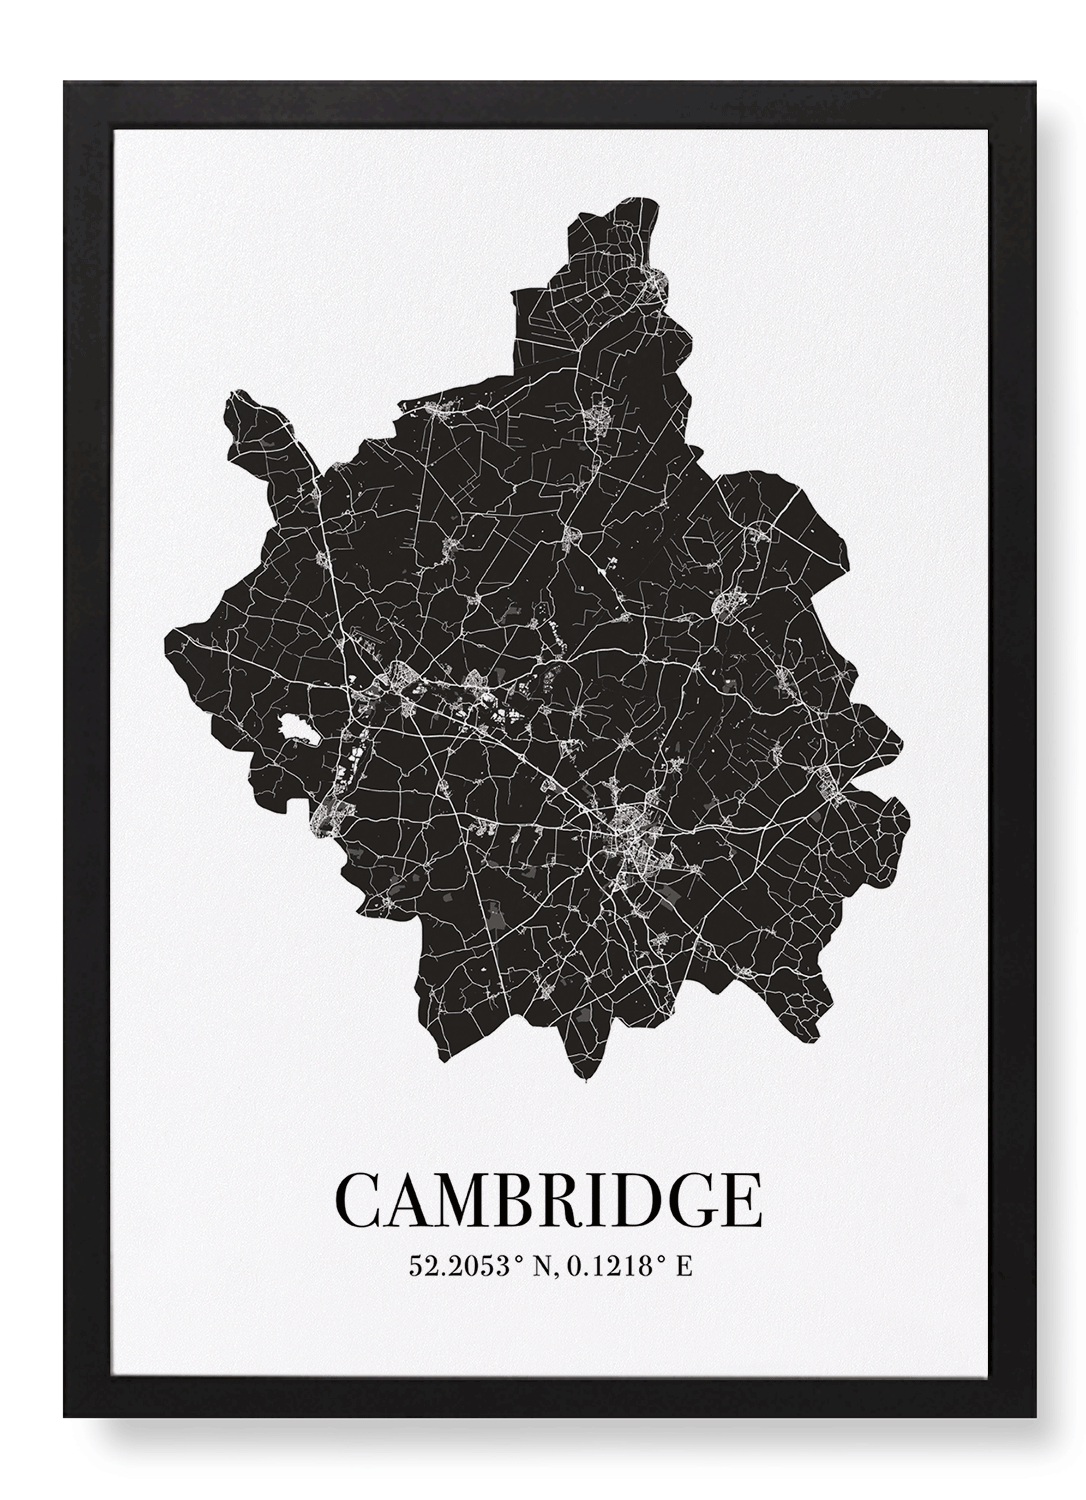 CAMBRIDGE CUTOUT